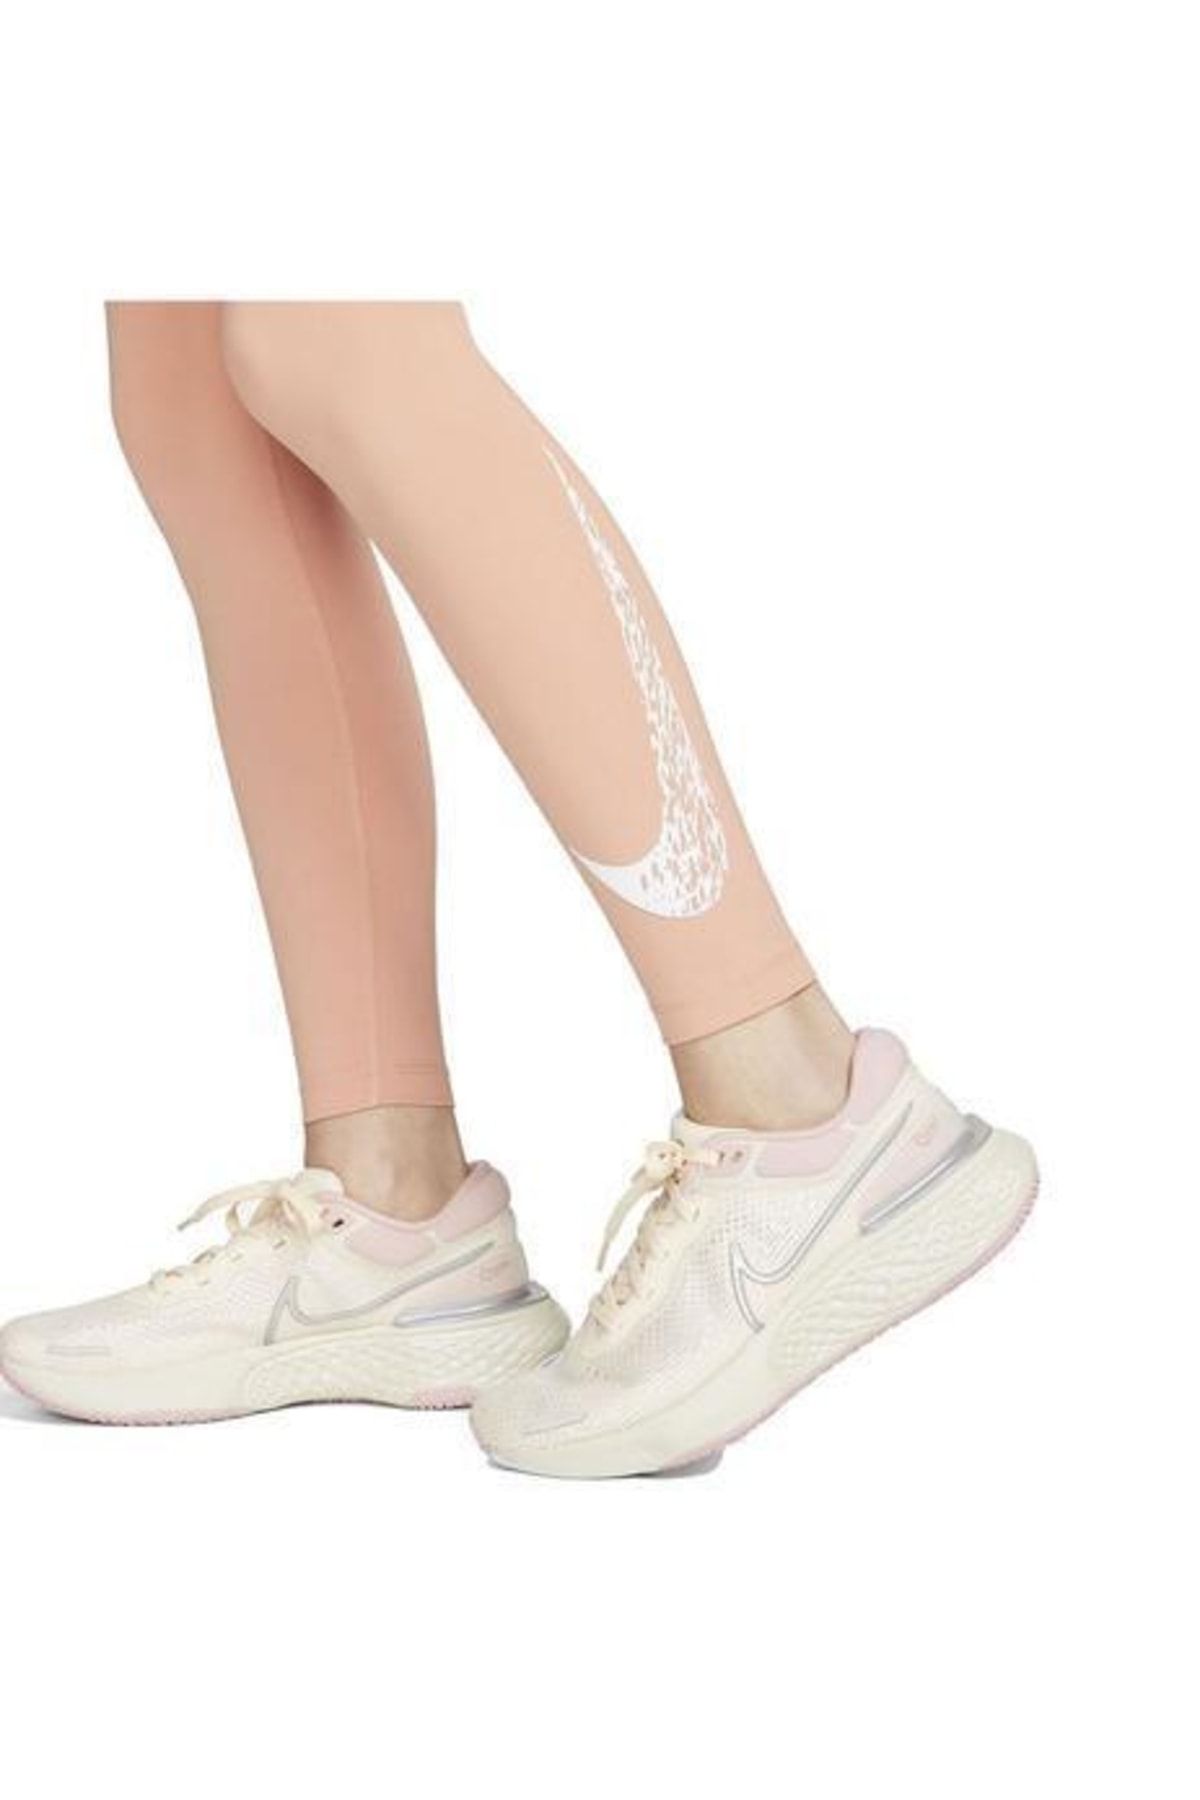 Nike Dm7767-824 Dri-fit Swoosh Run Women's Tights - Trendyol